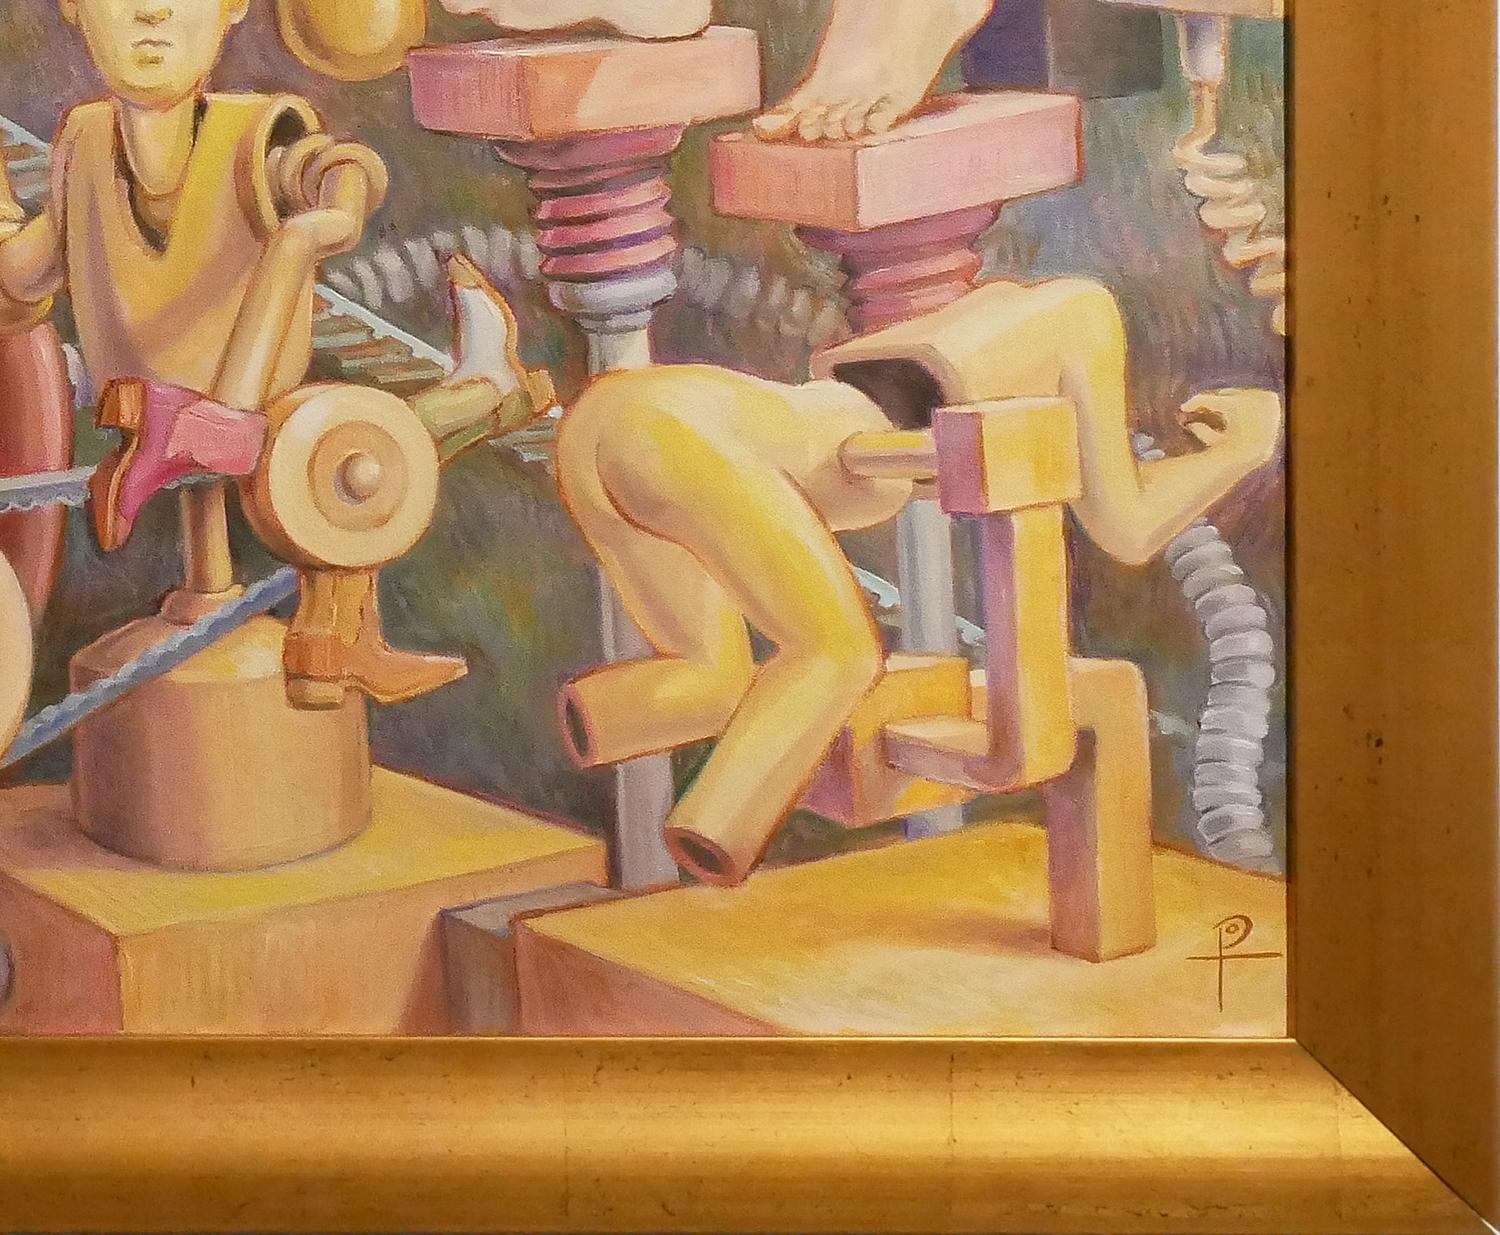 Farbenfrohes surrealistisches Gemälde des zeitgenössischen texanischen Künstlers Henry David Potwin. Das Werk zeigt eine belebte Szene mit vermenschlichten Maschinen, die durch Förderbänder verbunden sind. Signiert rechts unten auf der Vorderseite.